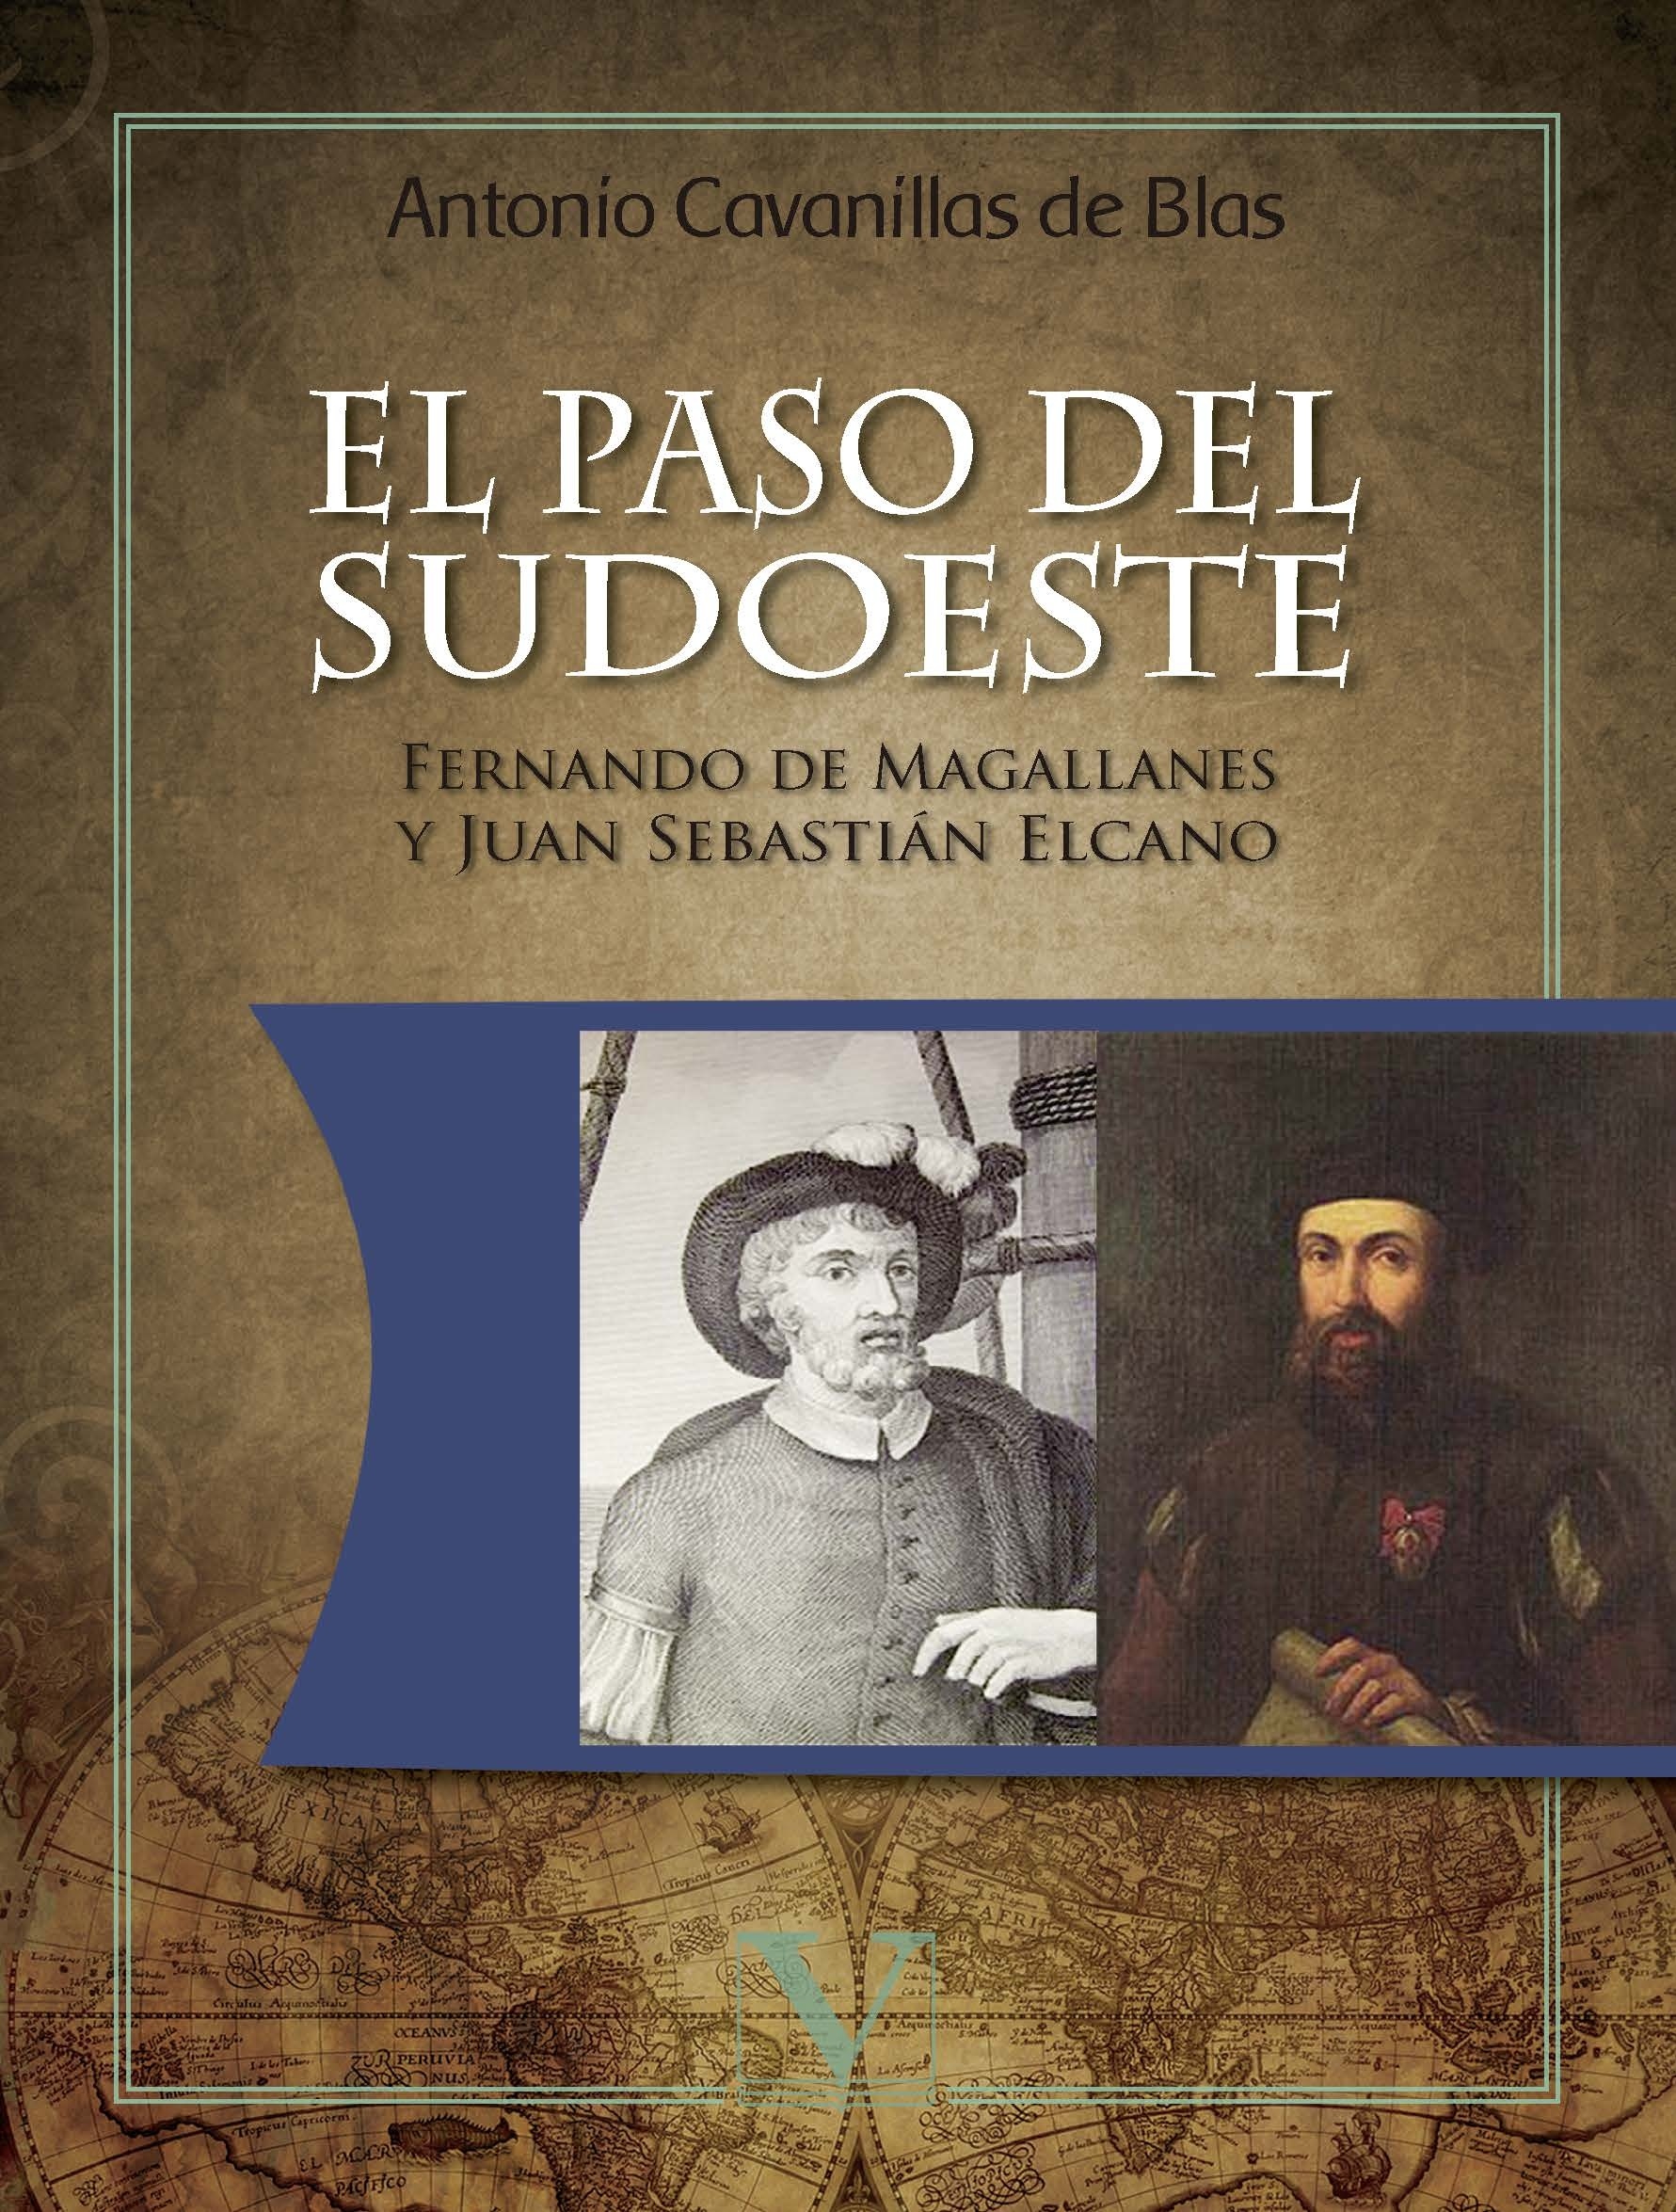 El paso del Sudoeste "Fernando de Magallanes y Juan Sebastián Elcano"